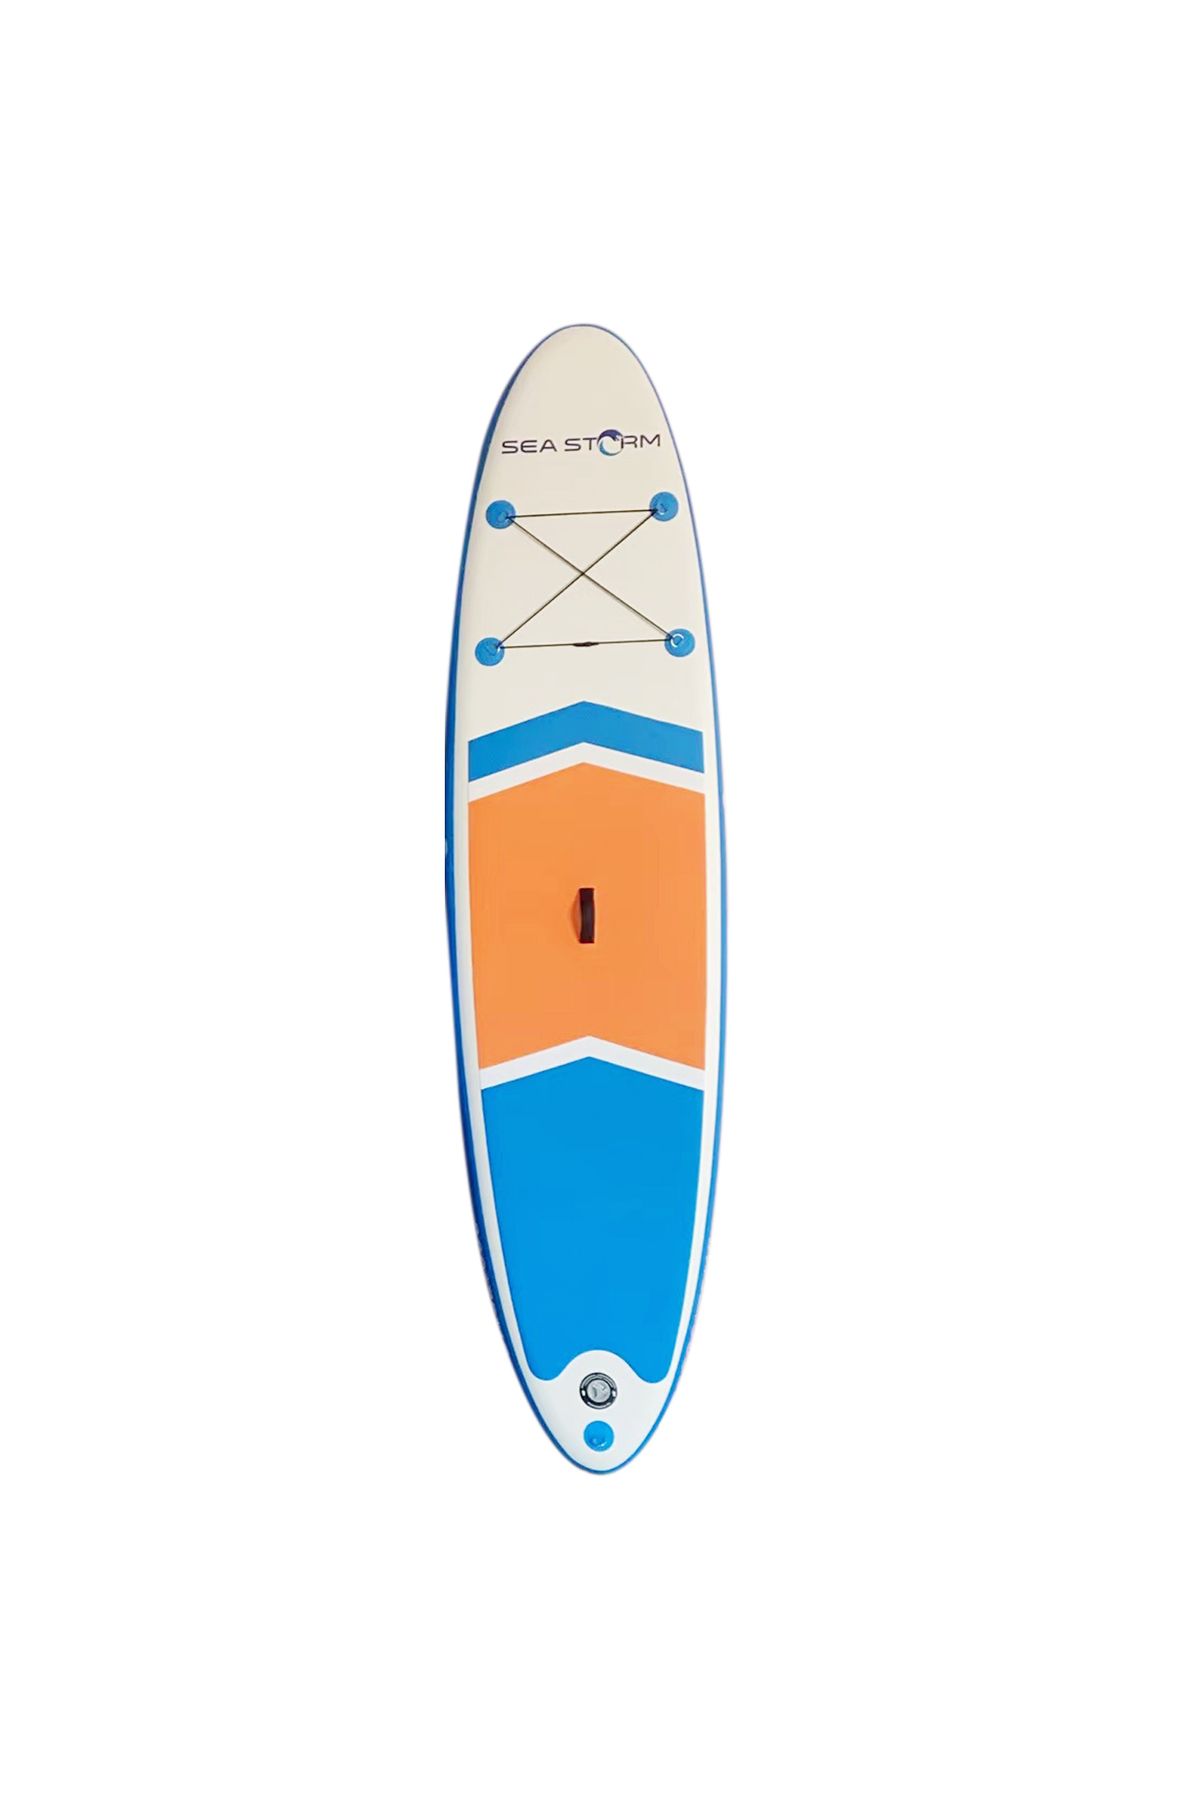 Seastorm Sea Storm SUP Şişme Sörf Tahtası Stand Up Paddle Board 320*75*15 cm Model.4